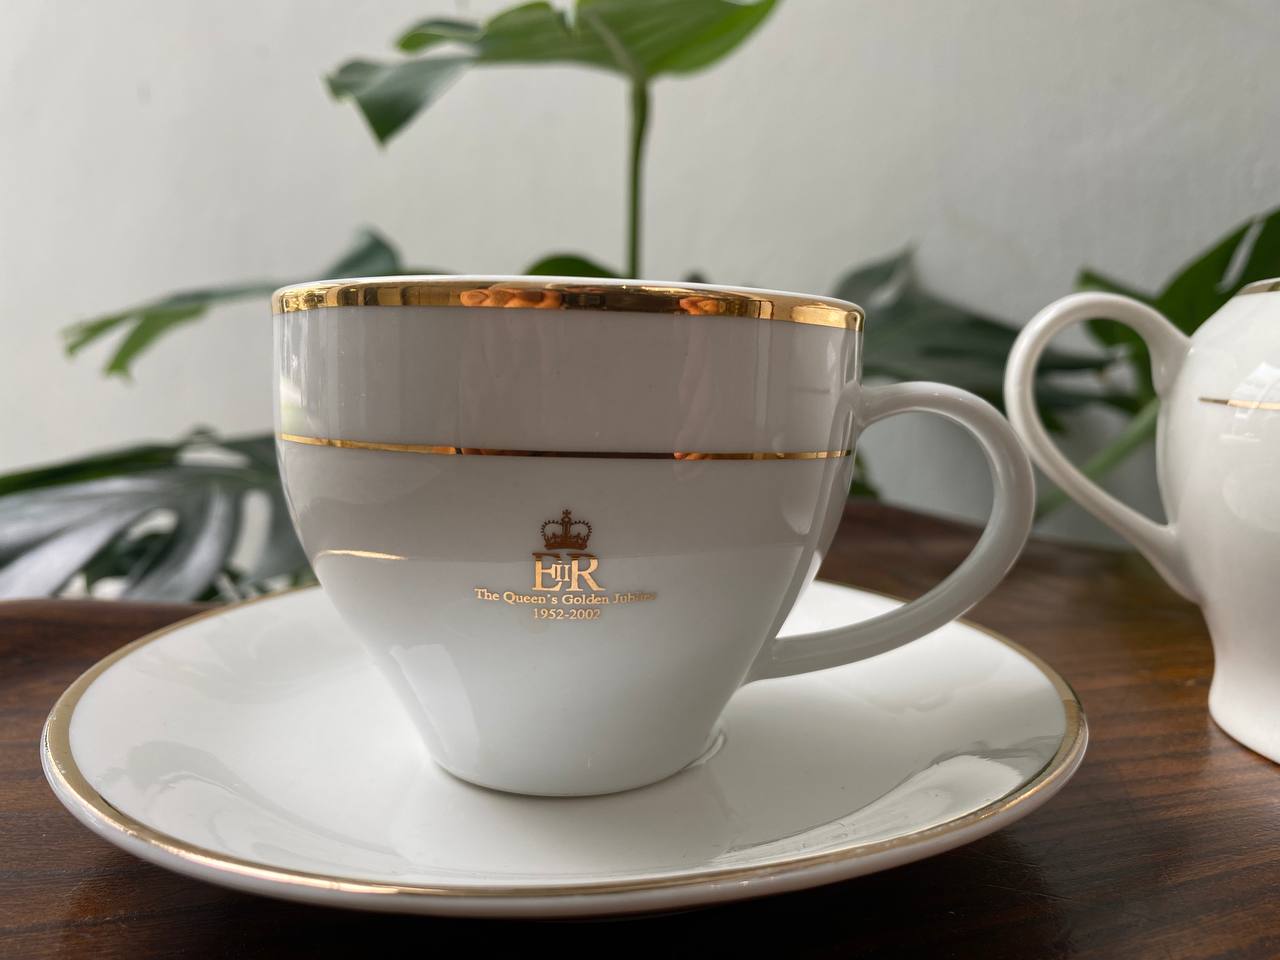 Queen Elizabeth II Golden Jubilee Teacups and Saucers